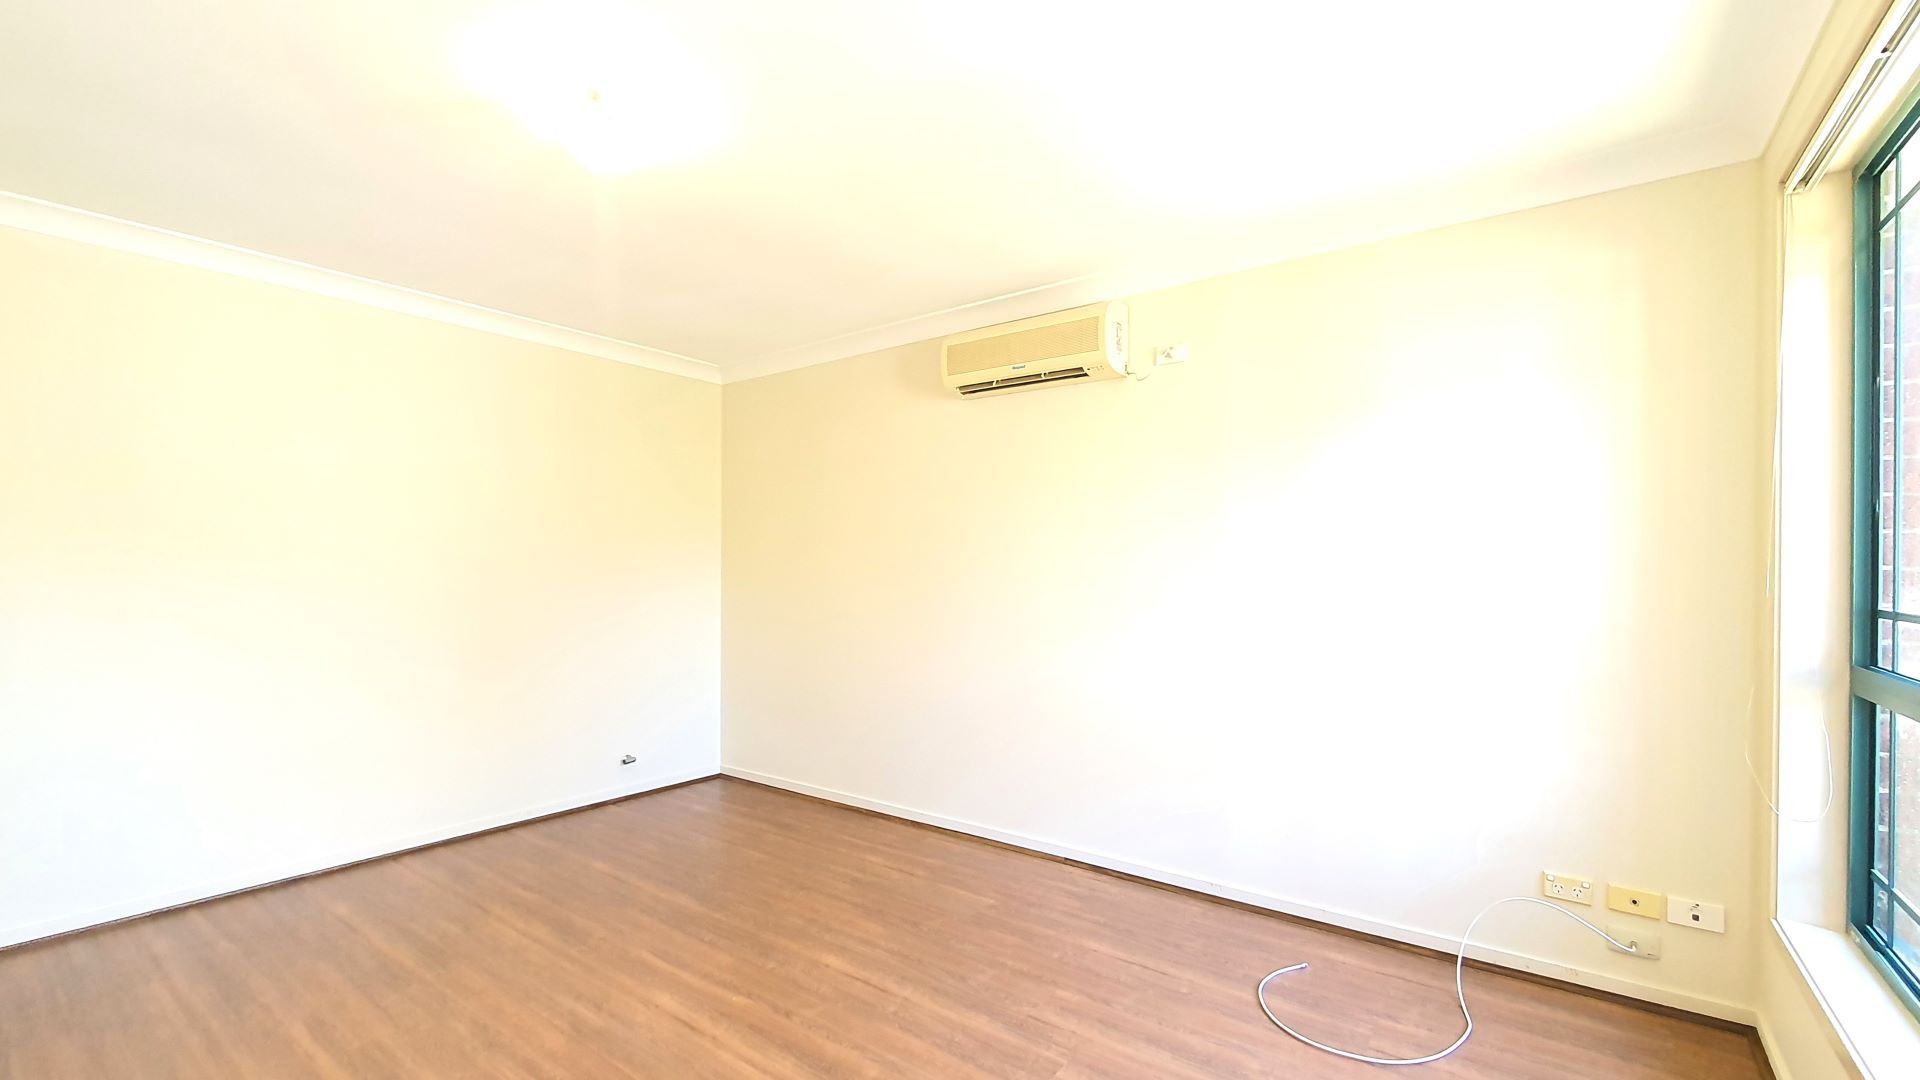 2 bedrooms Duplex in 18a Notley Street MOUNT DRUITT NSW, 2770